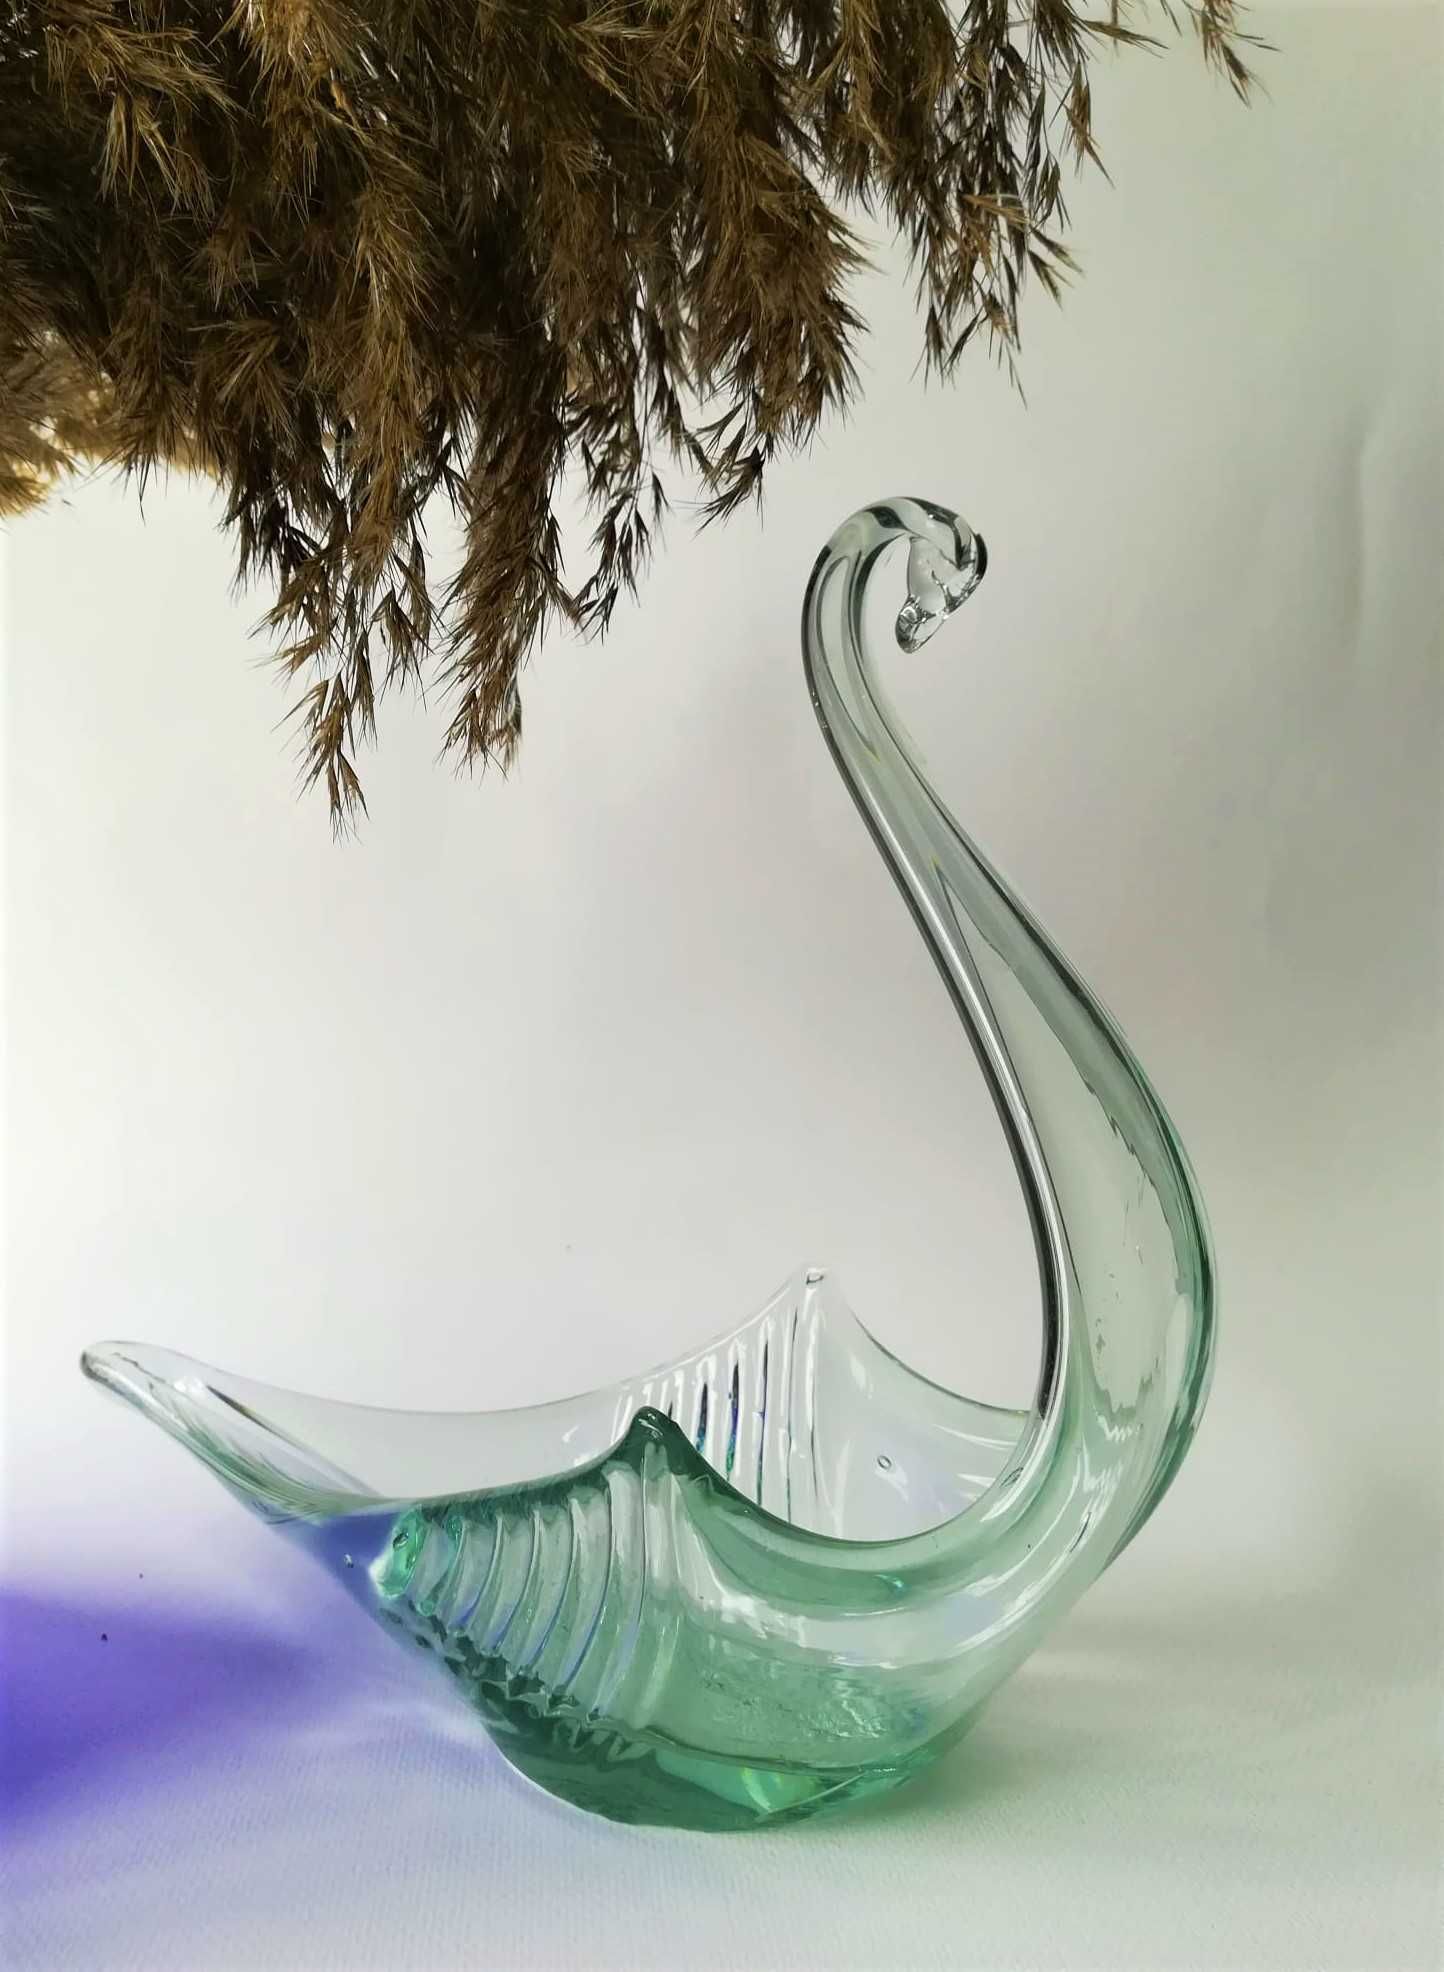 Lebădă decorativă din sticlă - Spania 1960 - 70` - Vintage Wonderland